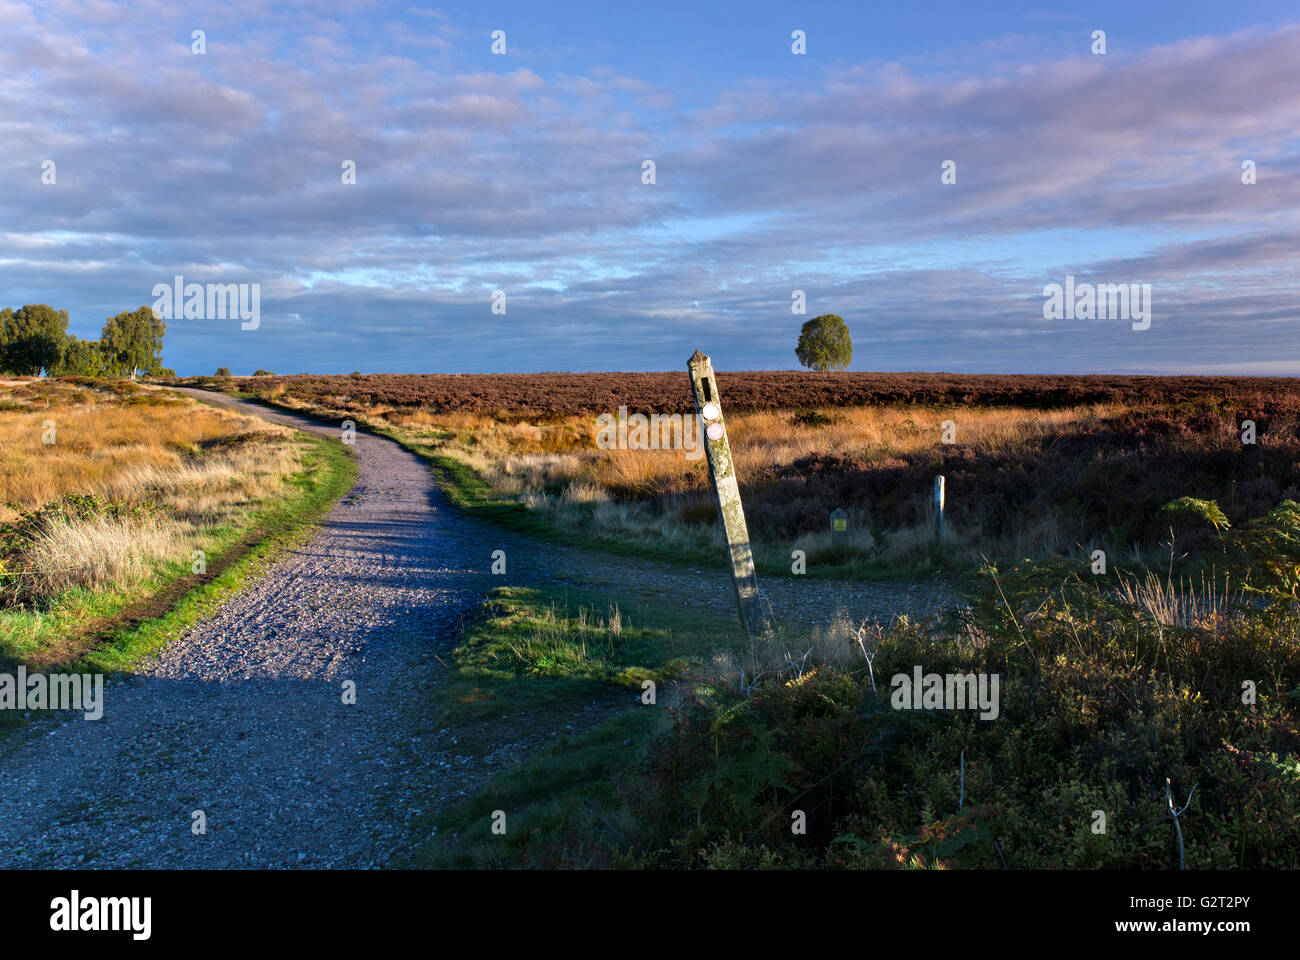 Herz von England Weg und Wegweiser Post über die Heide unter einem wunderschönen blauen Himmel mit saisonalen Farben und Tönungen Stockfoto